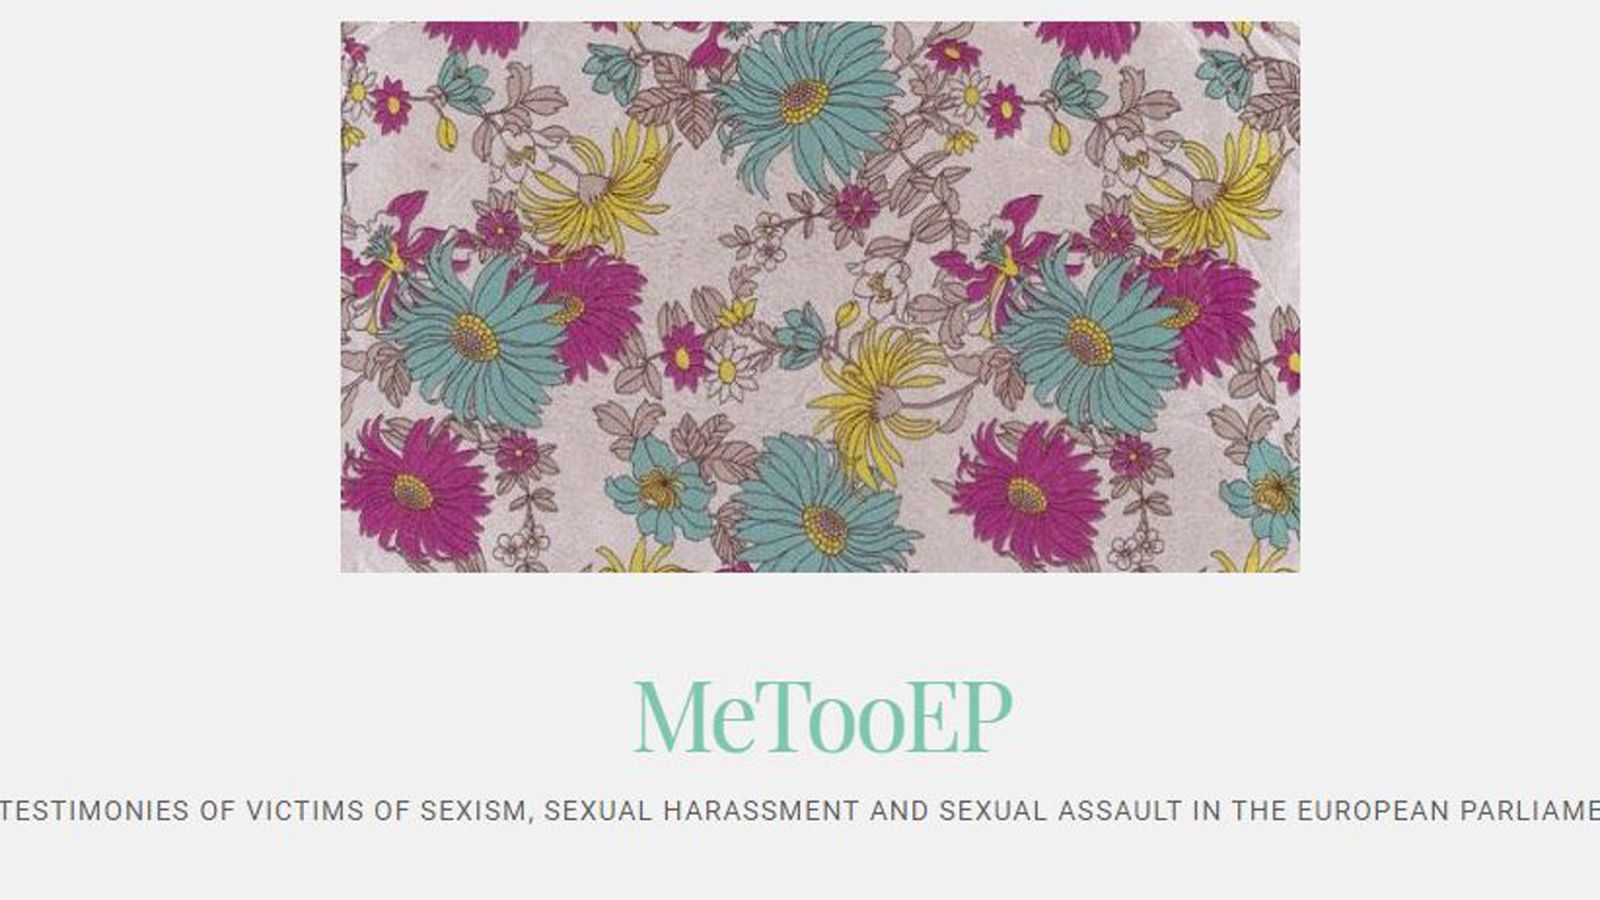 En el blog se dan consejos de cómo actuar si se sufre acoso sexual y se ofrece la opción de denunciar